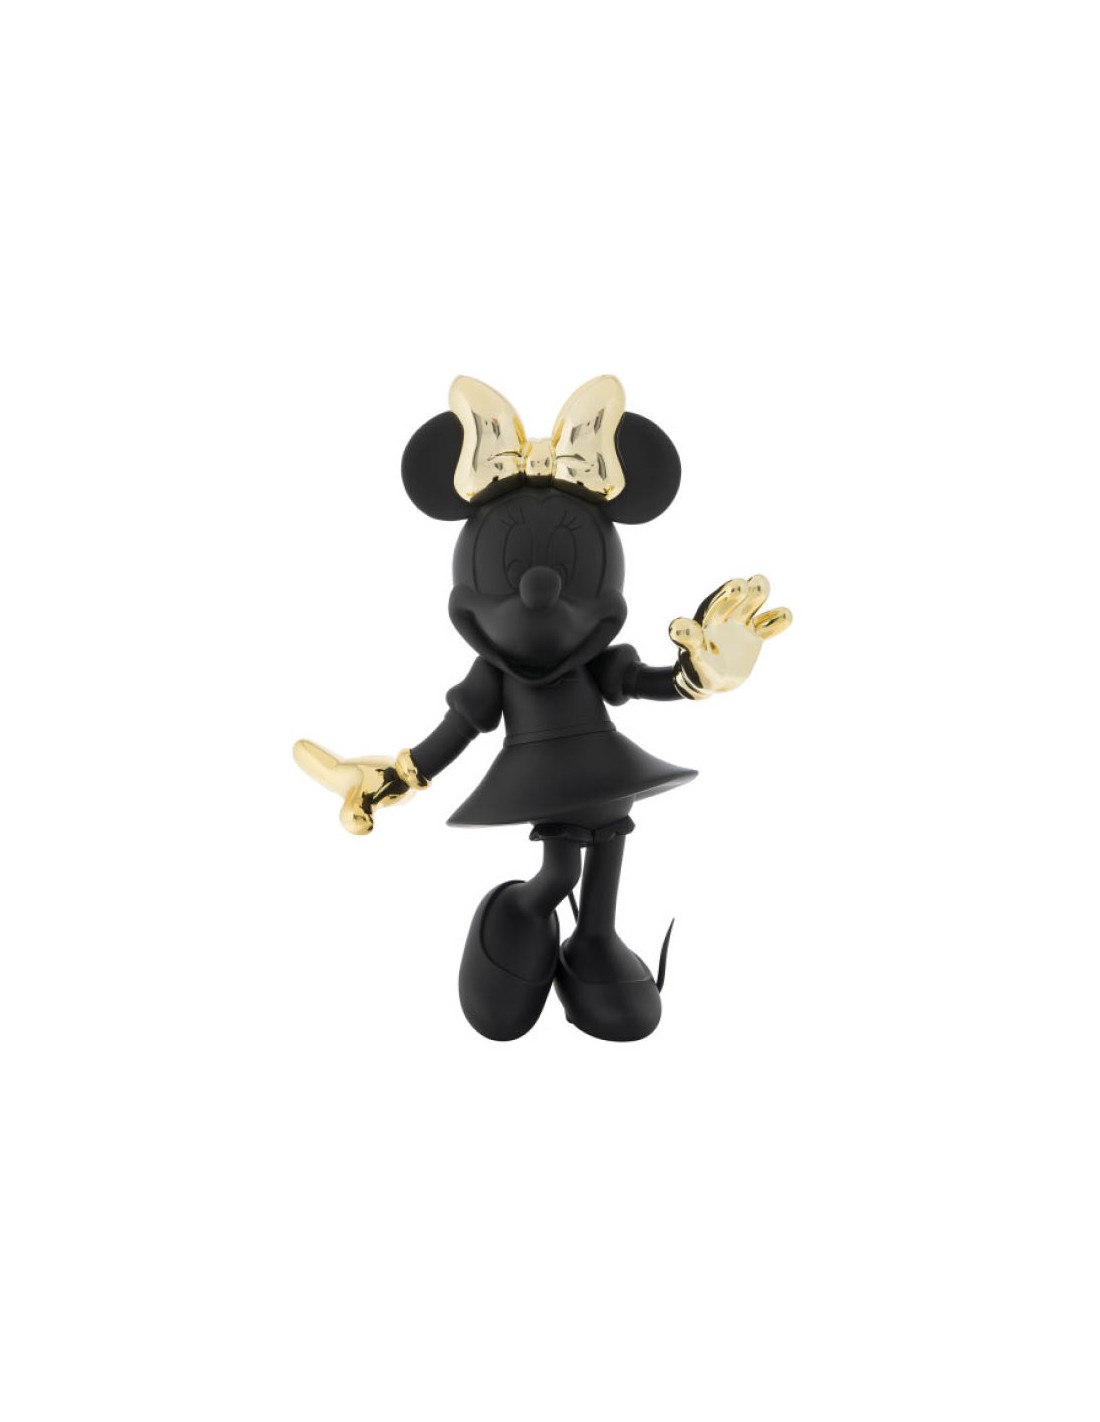 Découvrez nos figurines l figurine Minnie noir et or l Le cadeau